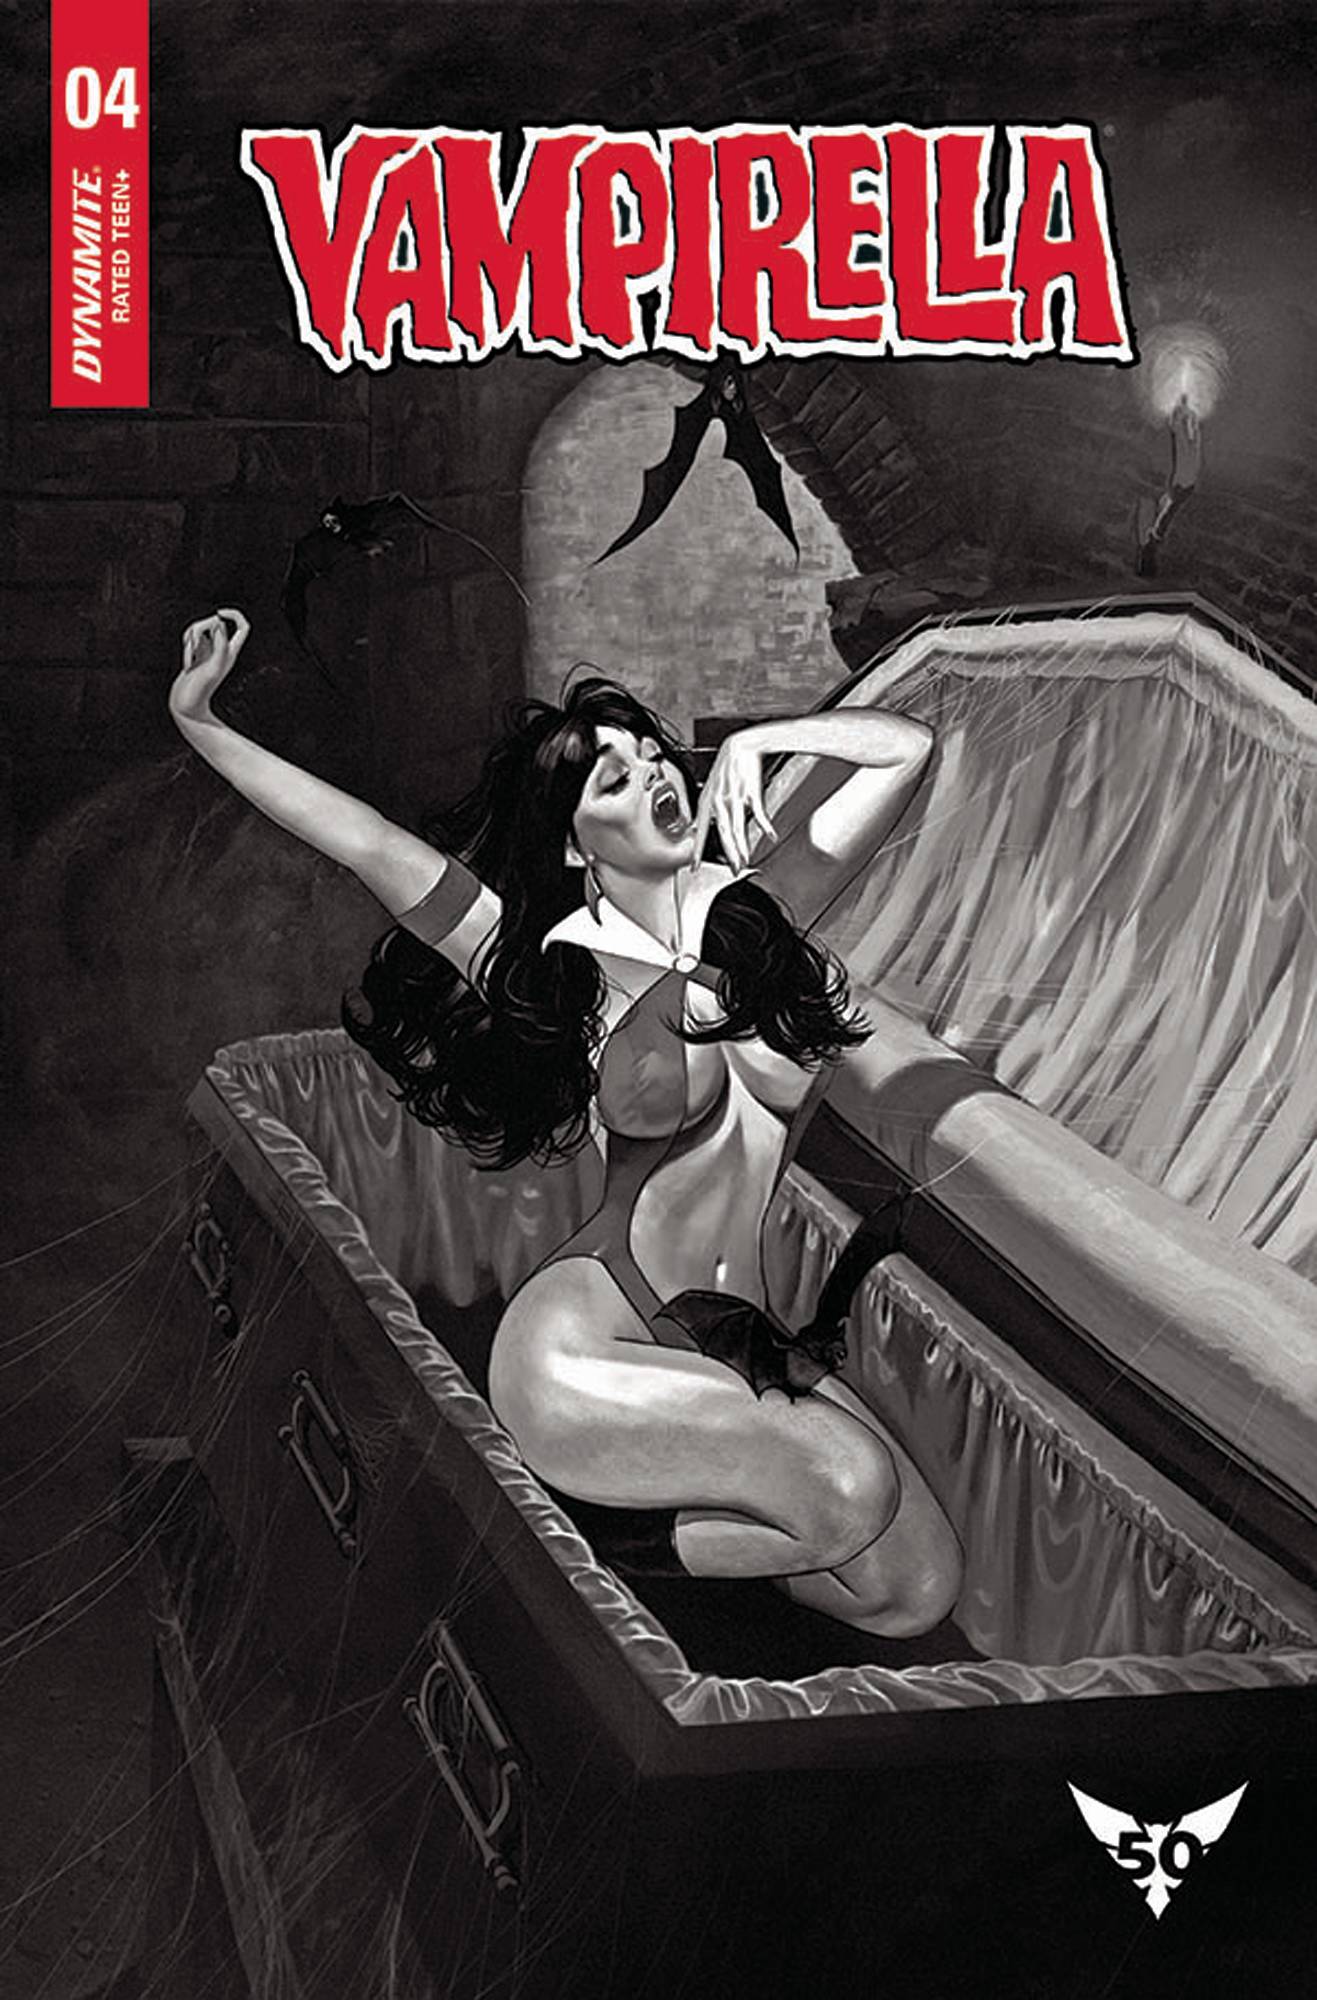 Vampirella #4 20 Copy Dalton Black & White Incentive